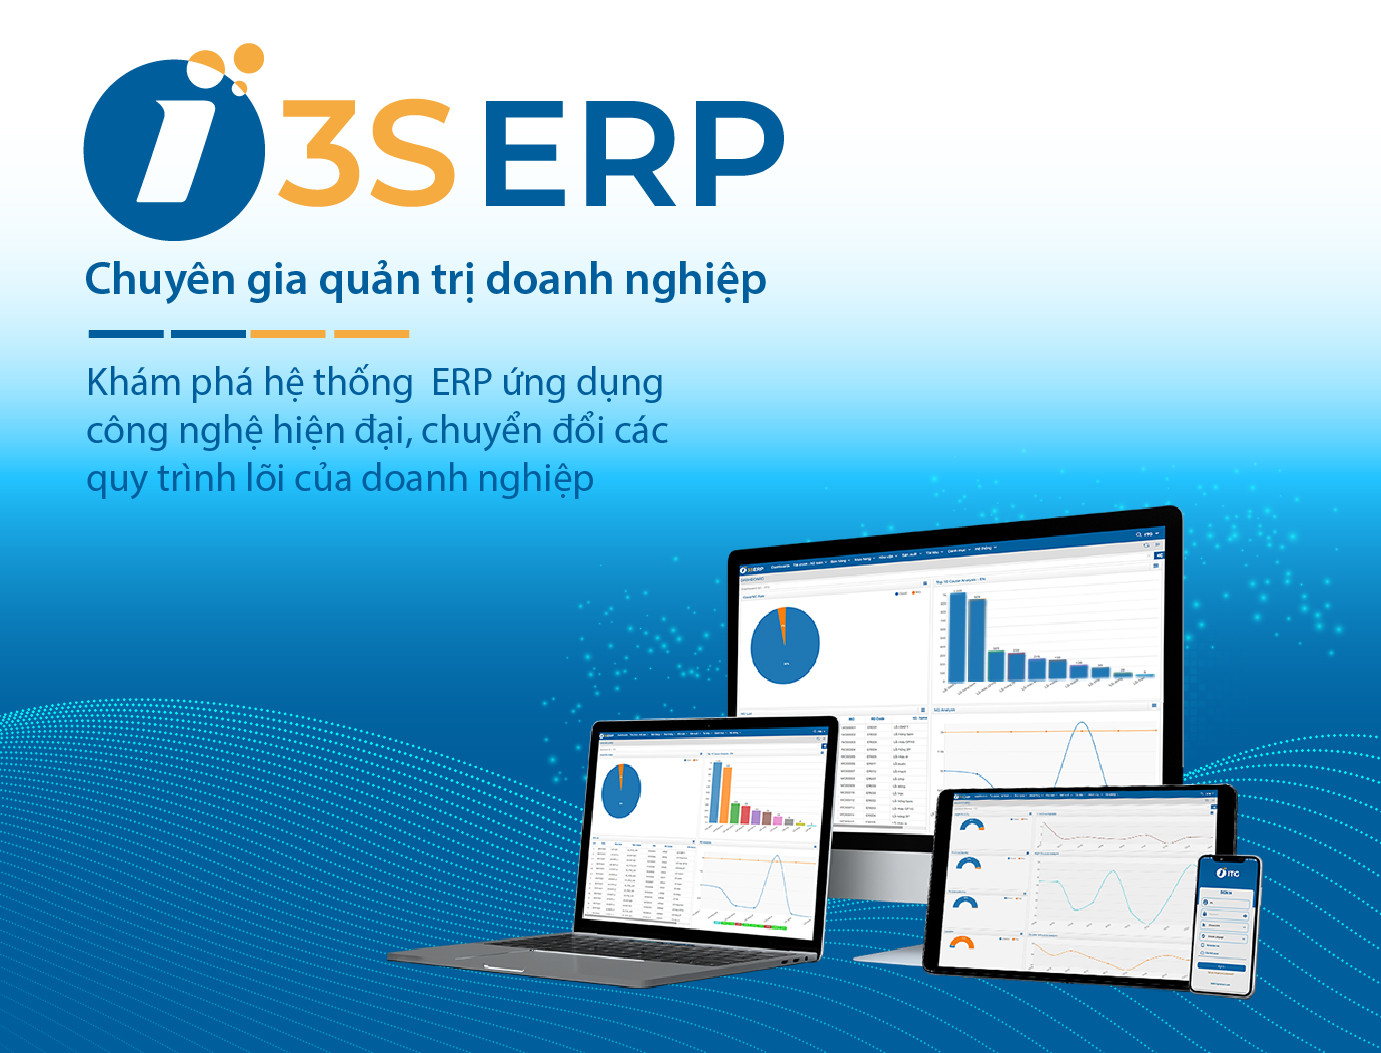 Hệ thống quản lý doanh nghiệp tổng thể 3S ERP